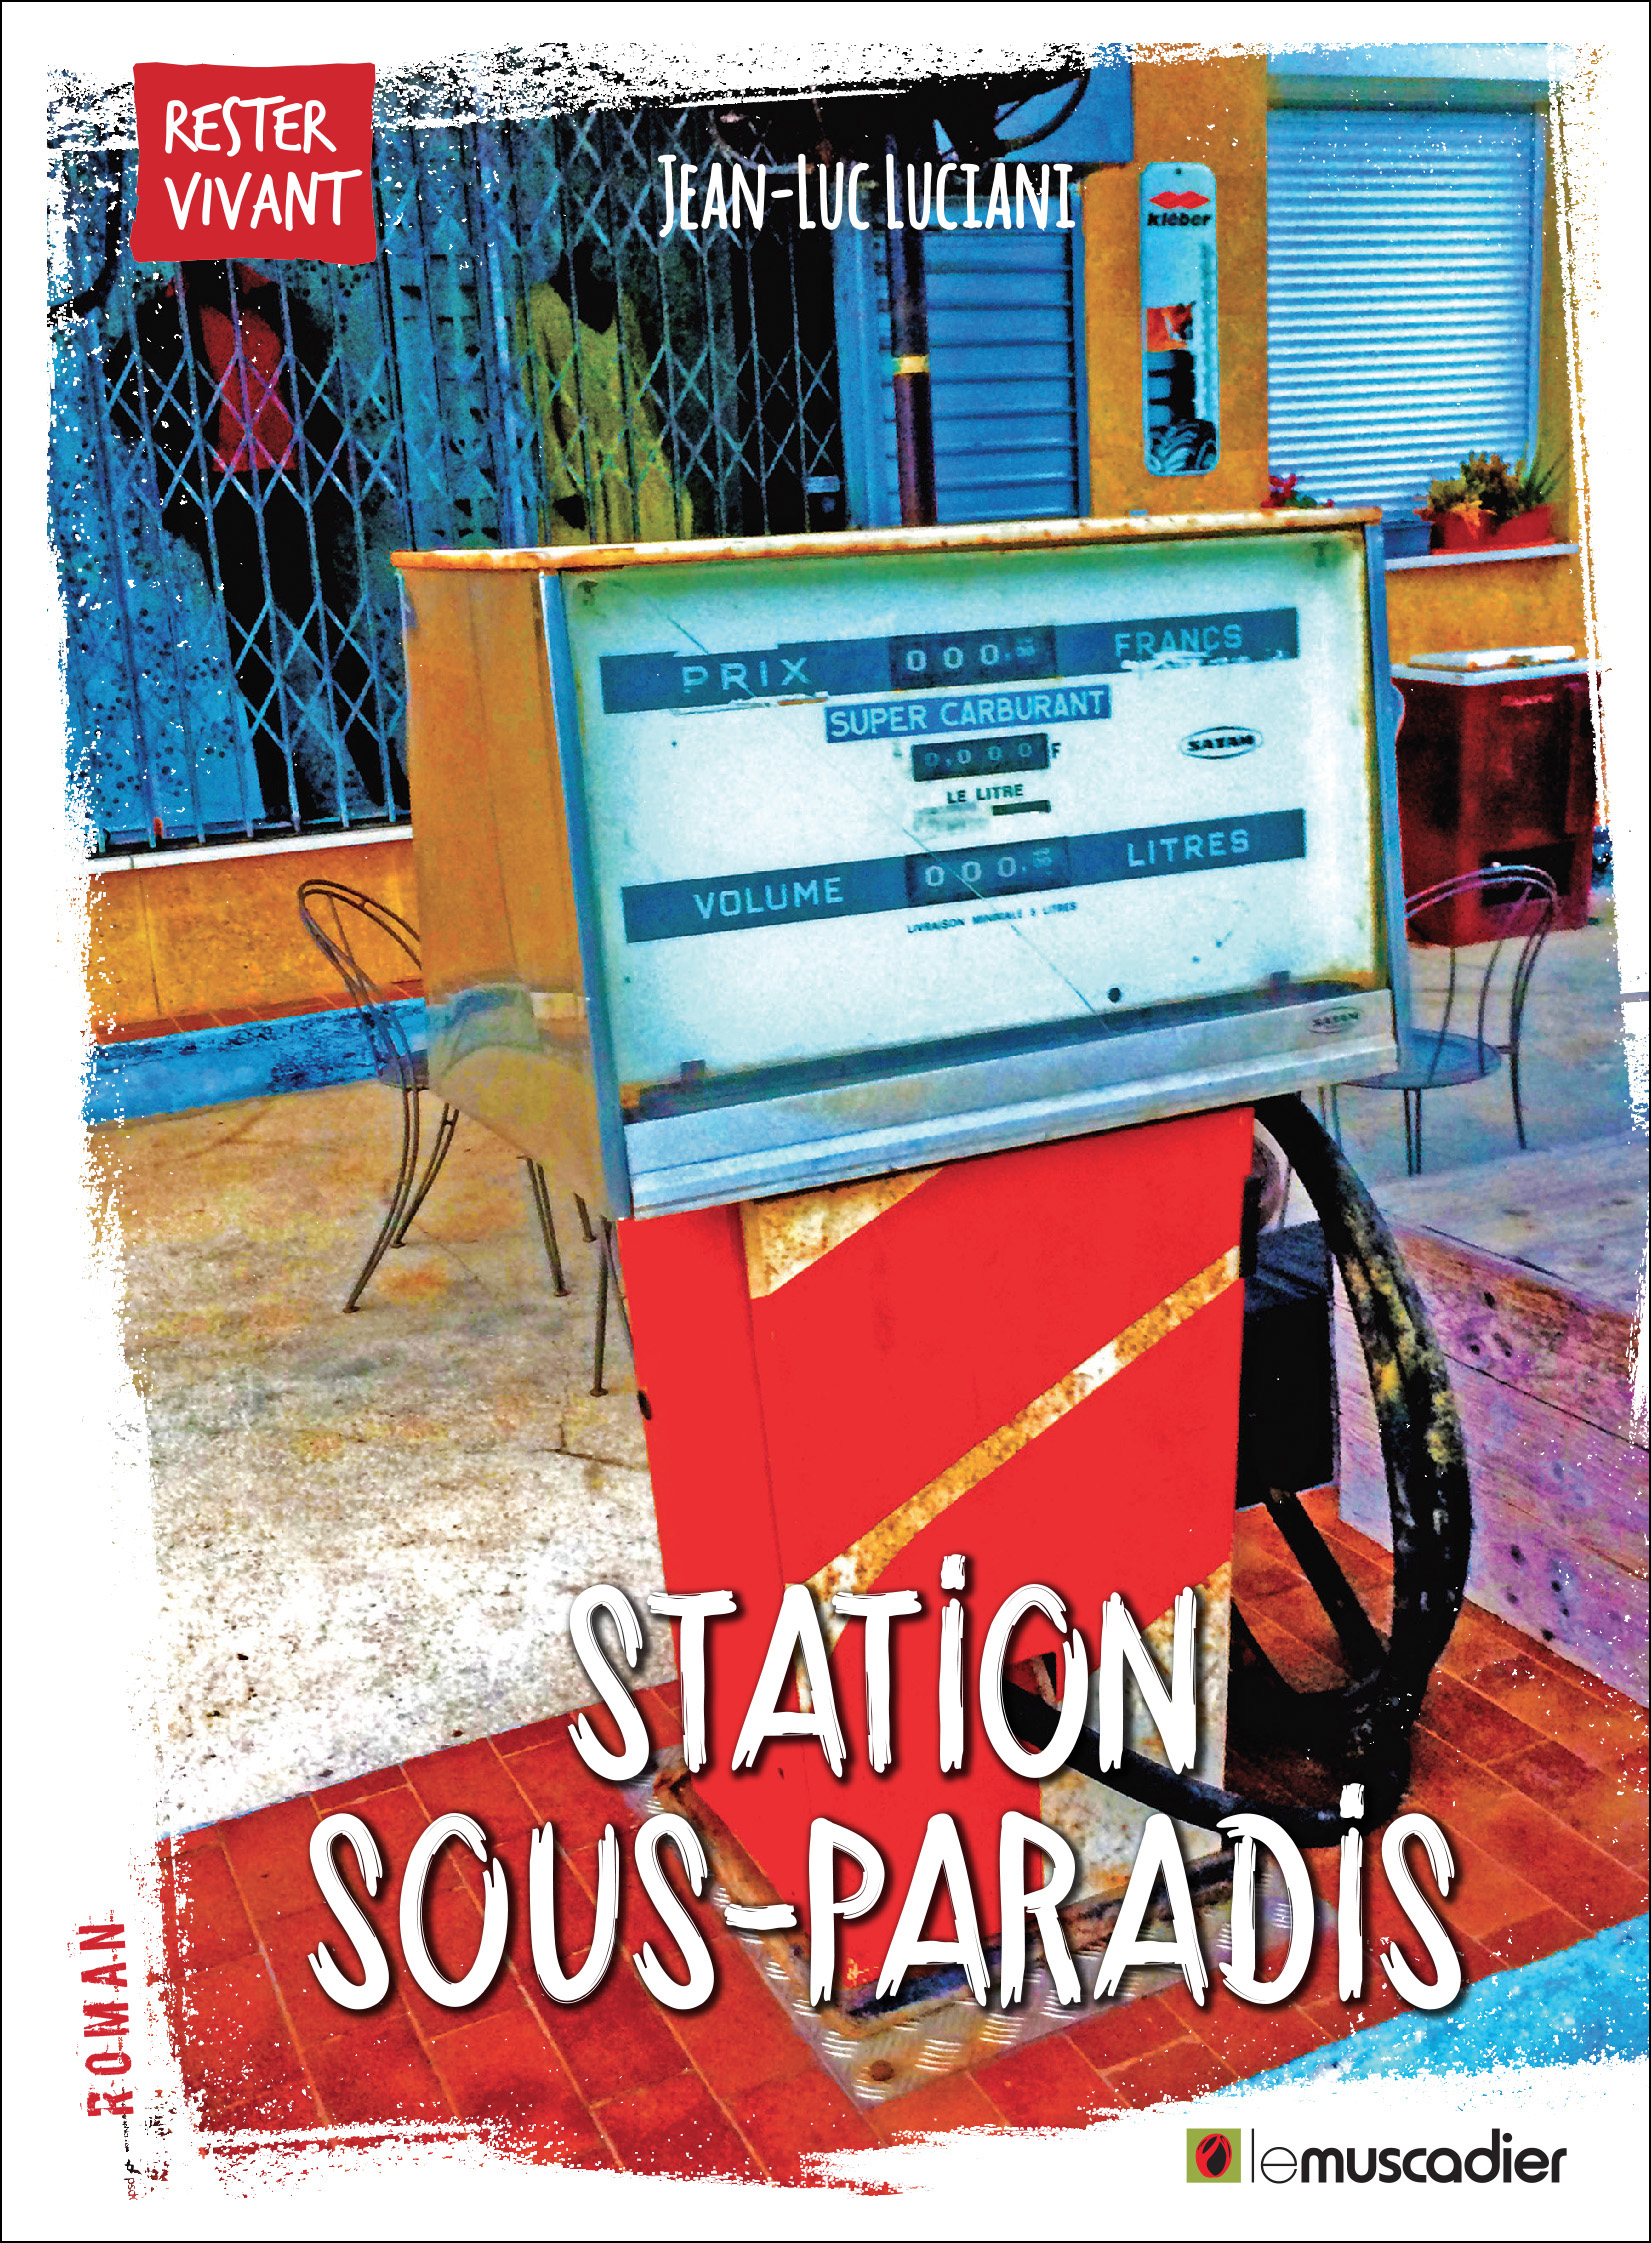 Couverture du livre Station Sous-Paradis - Jean-Luc Luciani - ISBN 9791090685710